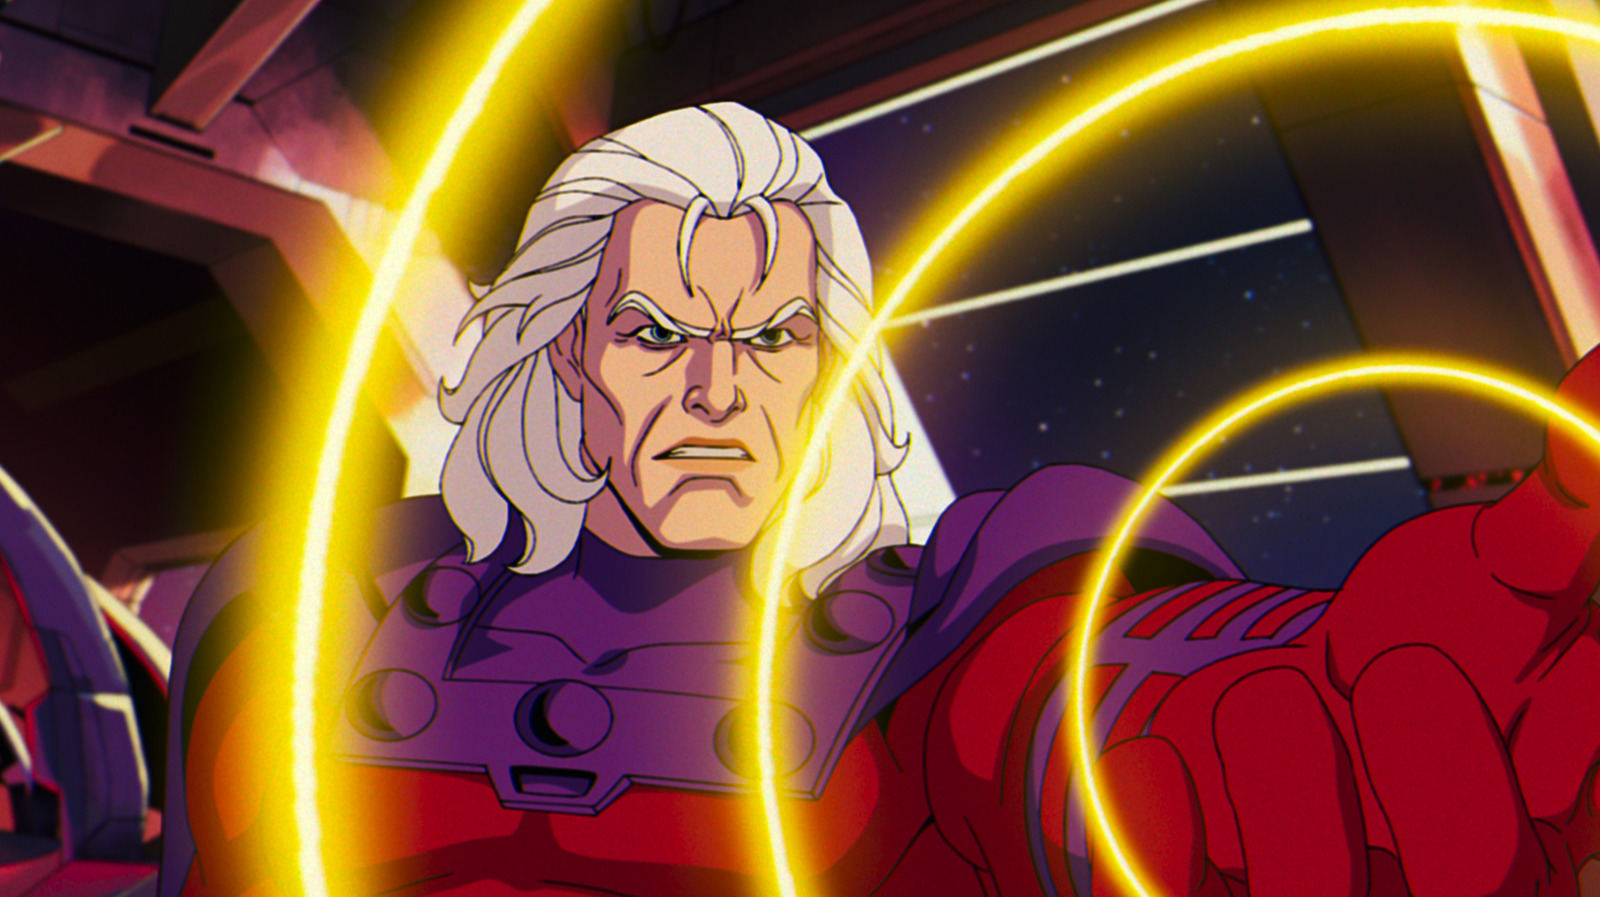 كان X-Men '97 بمثابة هزيمة عميقة لأبطال Marvel المتحولين - لأن Magneto كان على حق